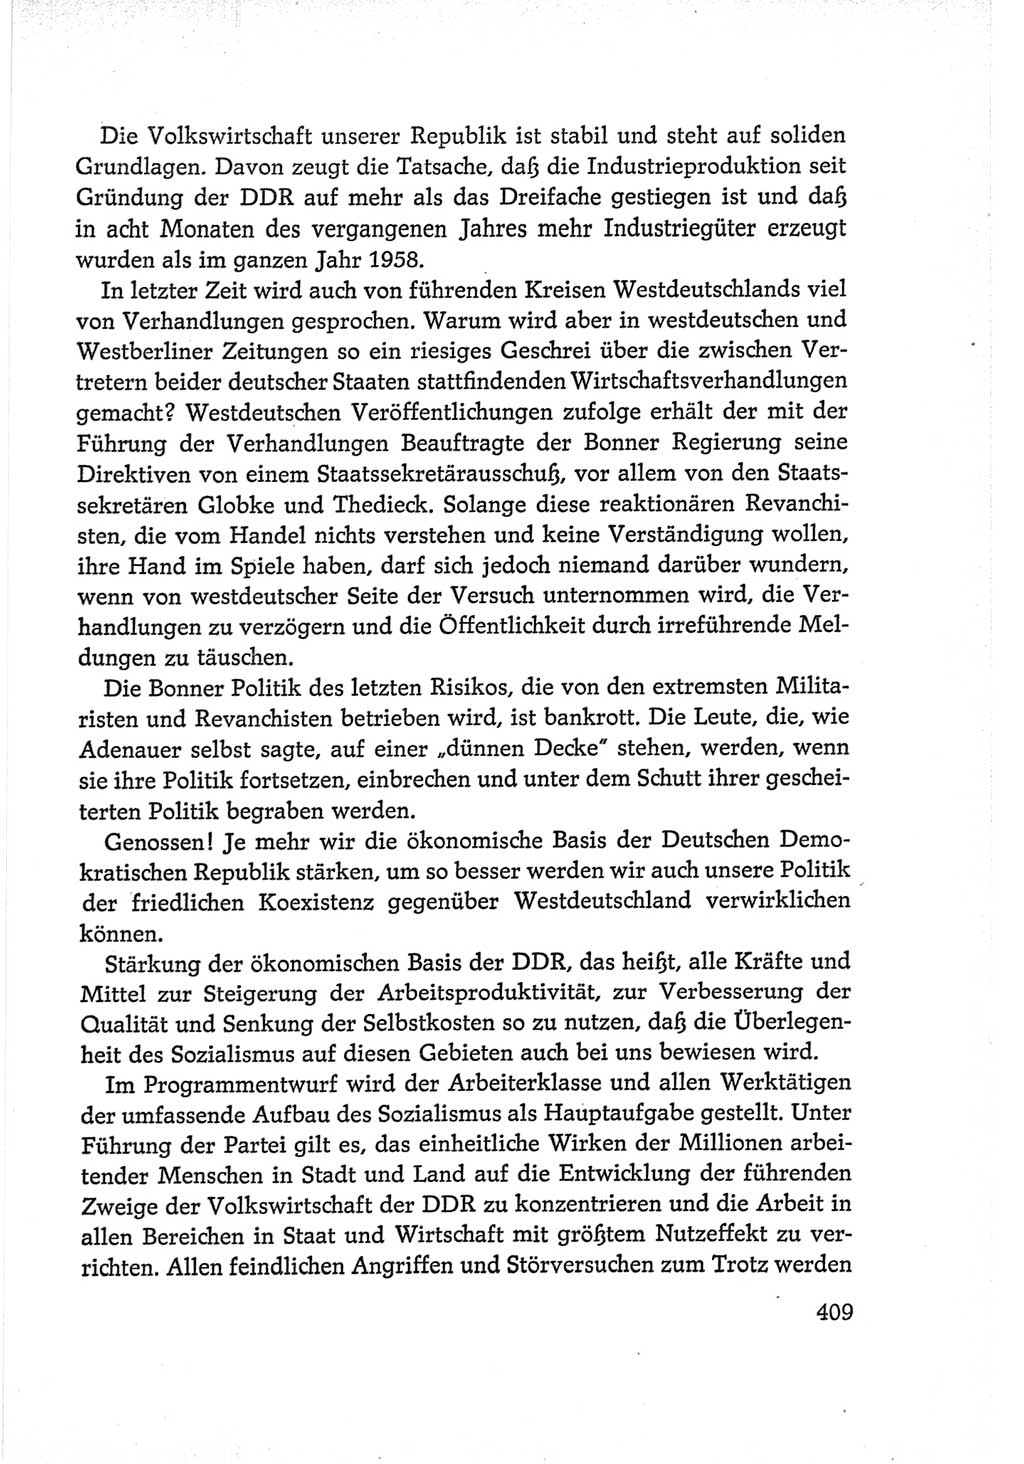 Protokoll der Verhandlungen des Ⅵ. Parteitages der Sozialistischen Einheitspartei Deutschlands (SED) [Deutsche Demokratische Republik (DDR)] 1963, Band Ⅰ, Seite 409 (Prot. Verh. Ⅵ. PT SED DDR 1963, Bd. Ⅰ, S. 409)